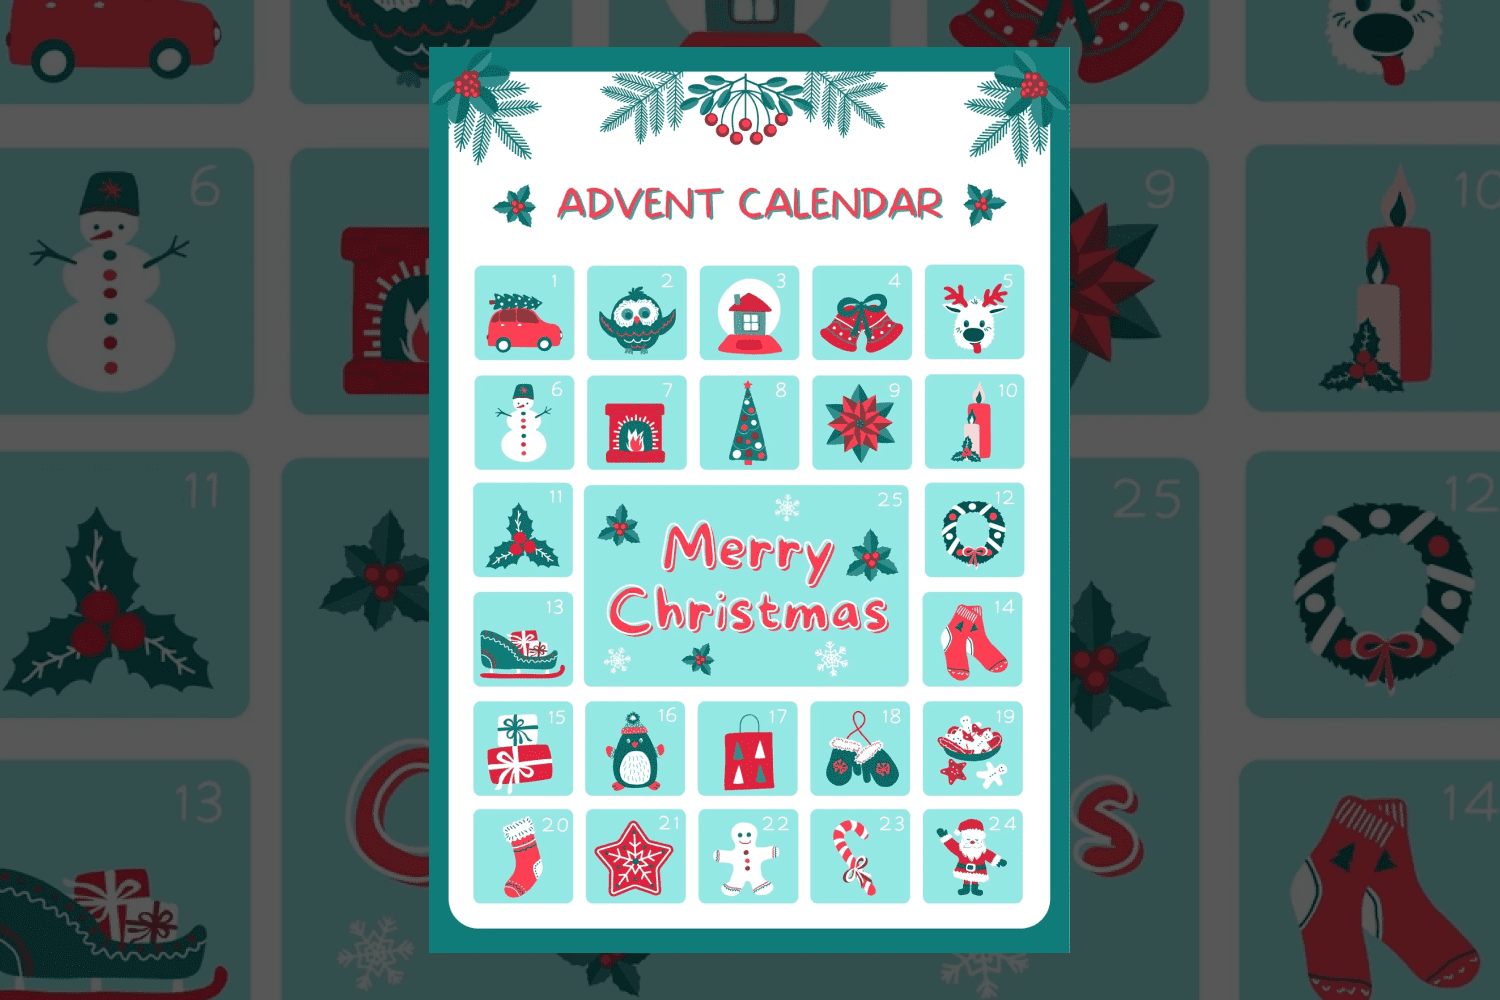 December calendar with cute green doodles.